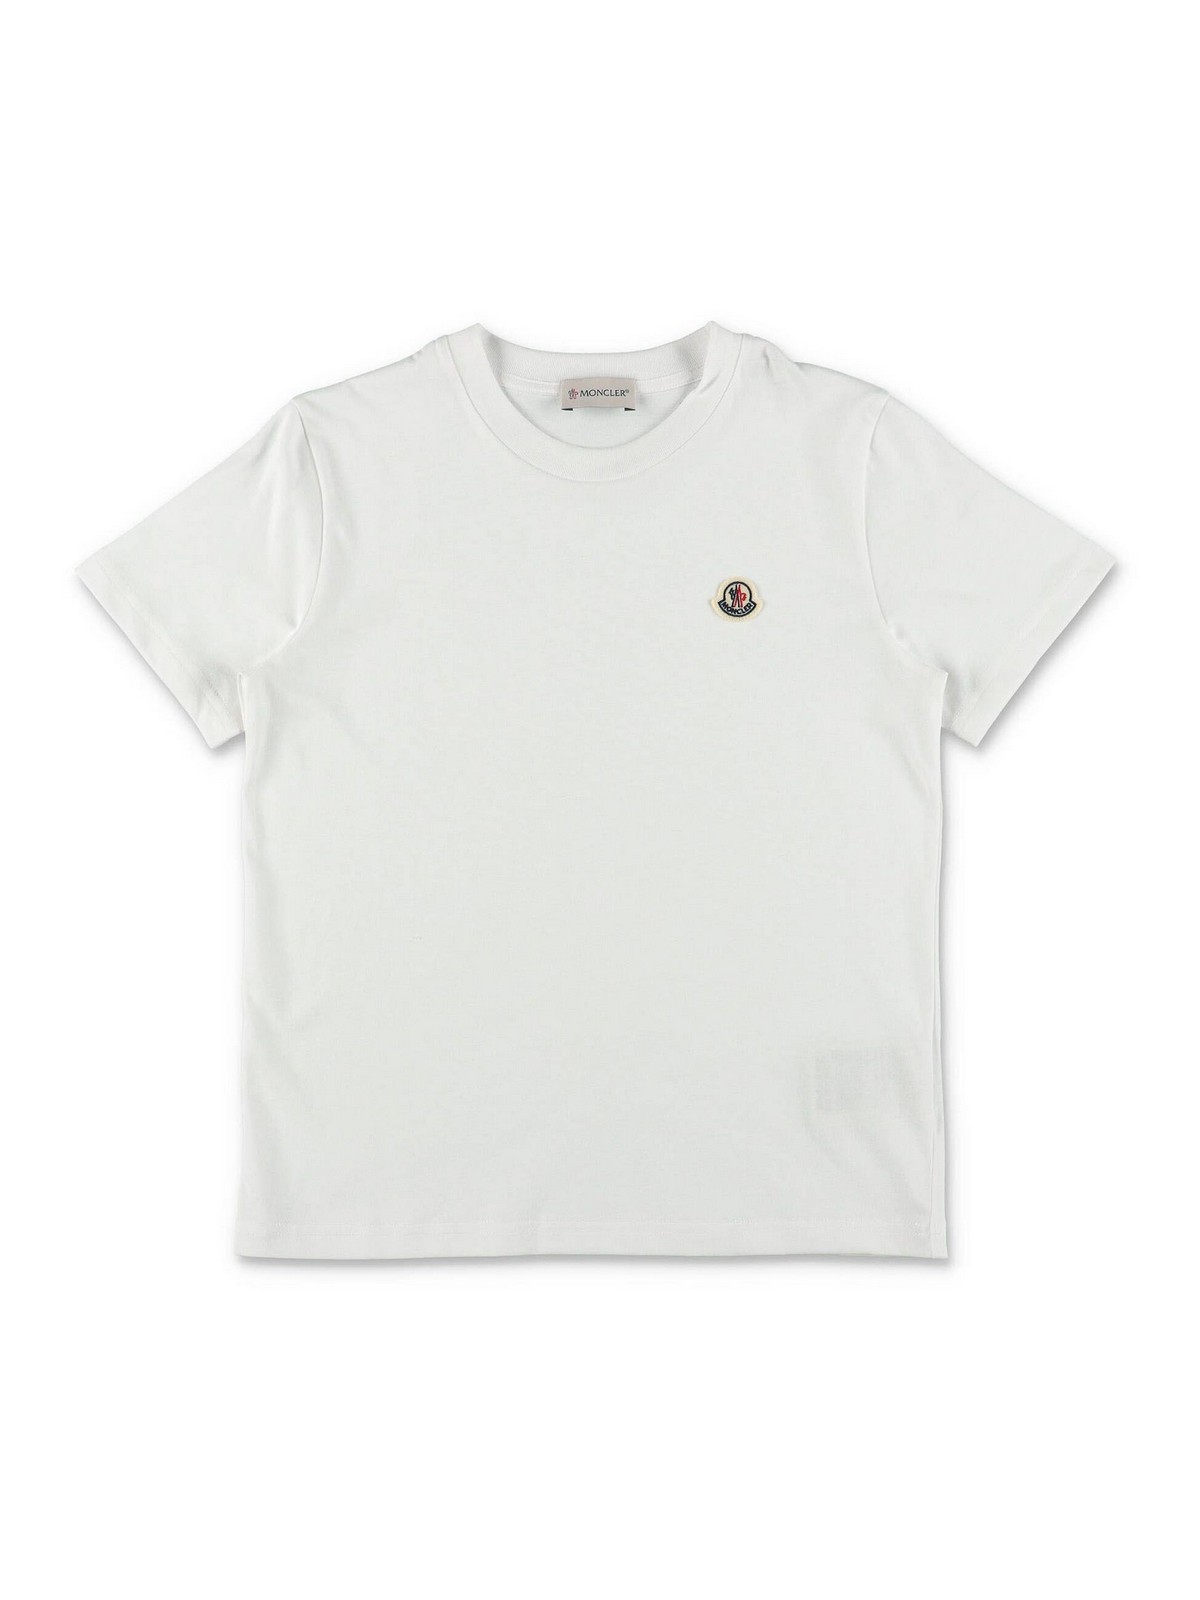 Moncler Kids' White Cotton Jersey Boy  T-shirt